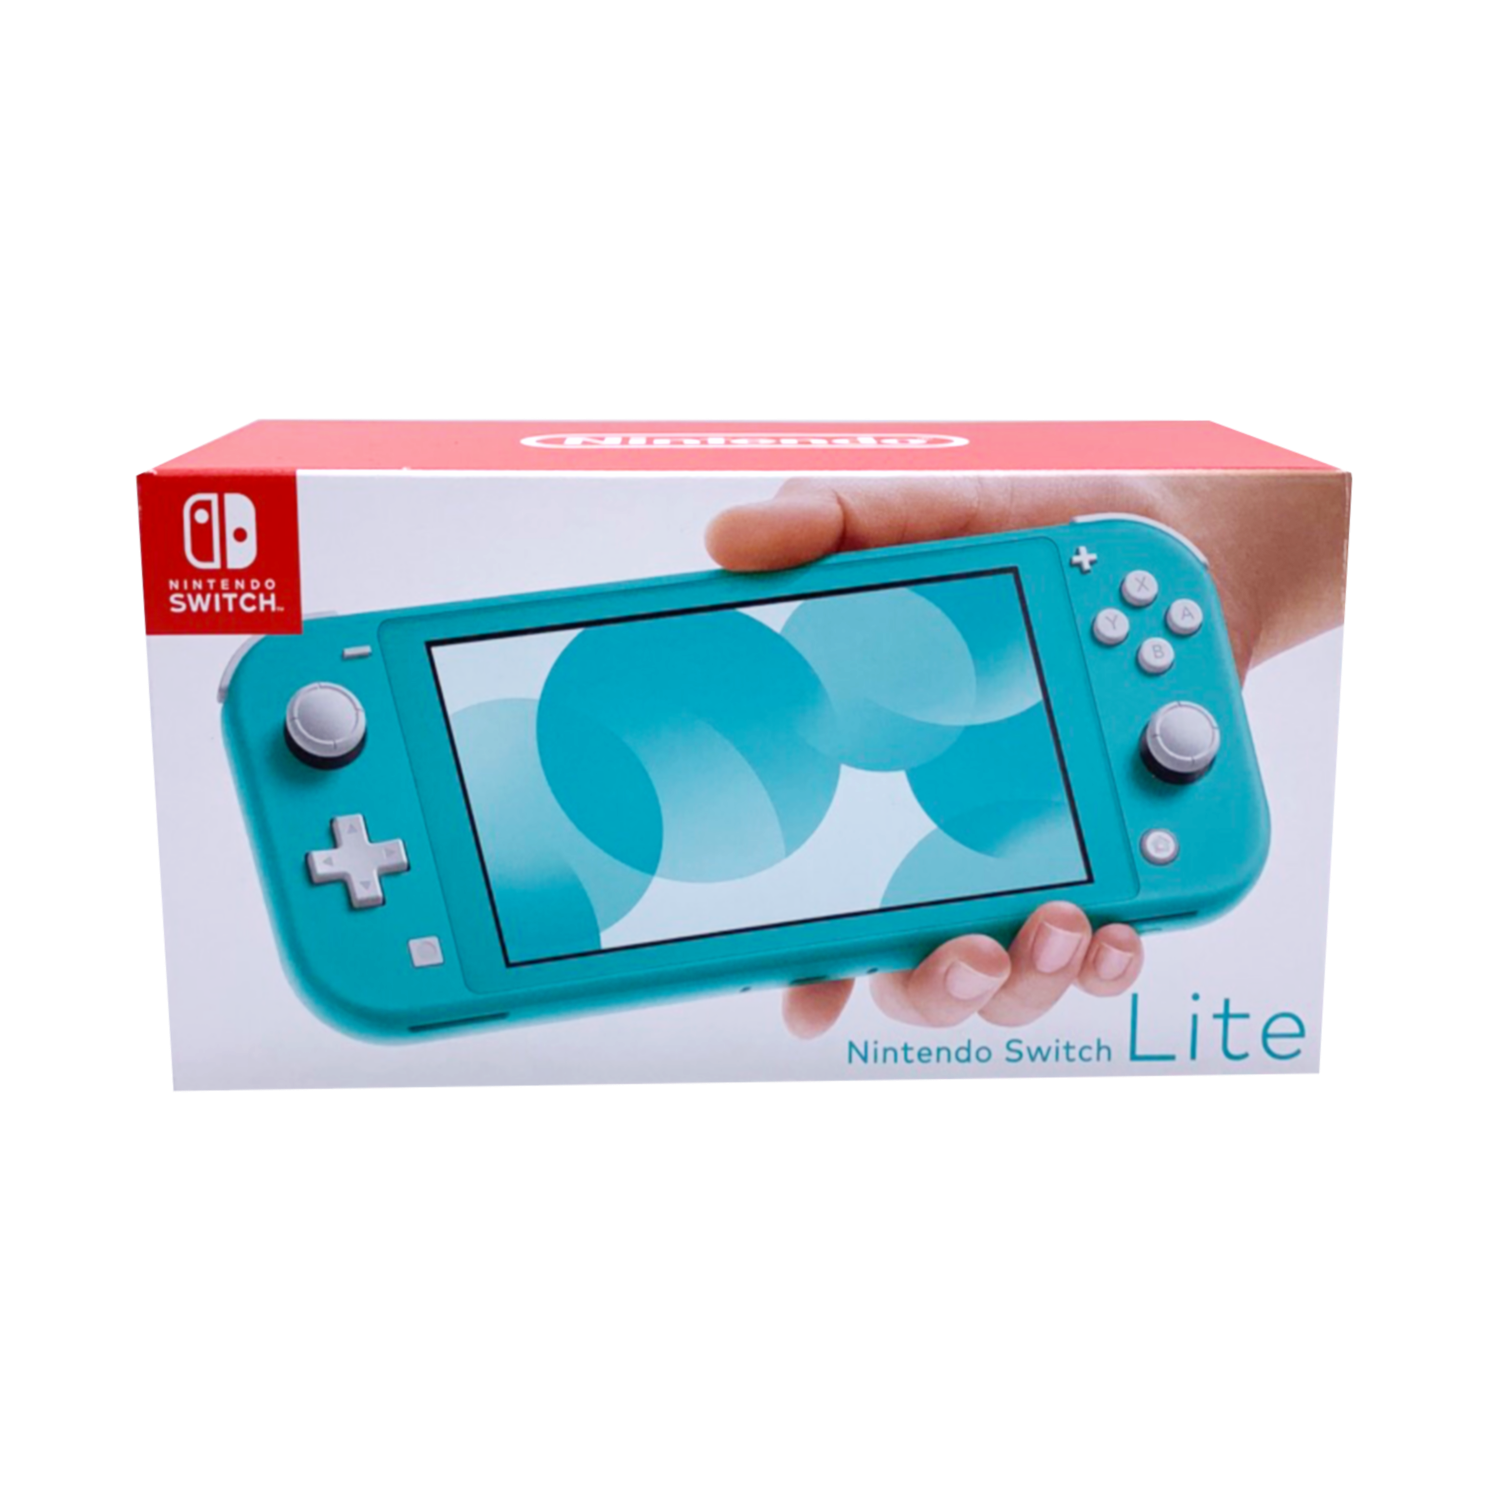 Flarii リモート応援プラン Nintendo Switch Lite 任天堂スイッチライト プラン